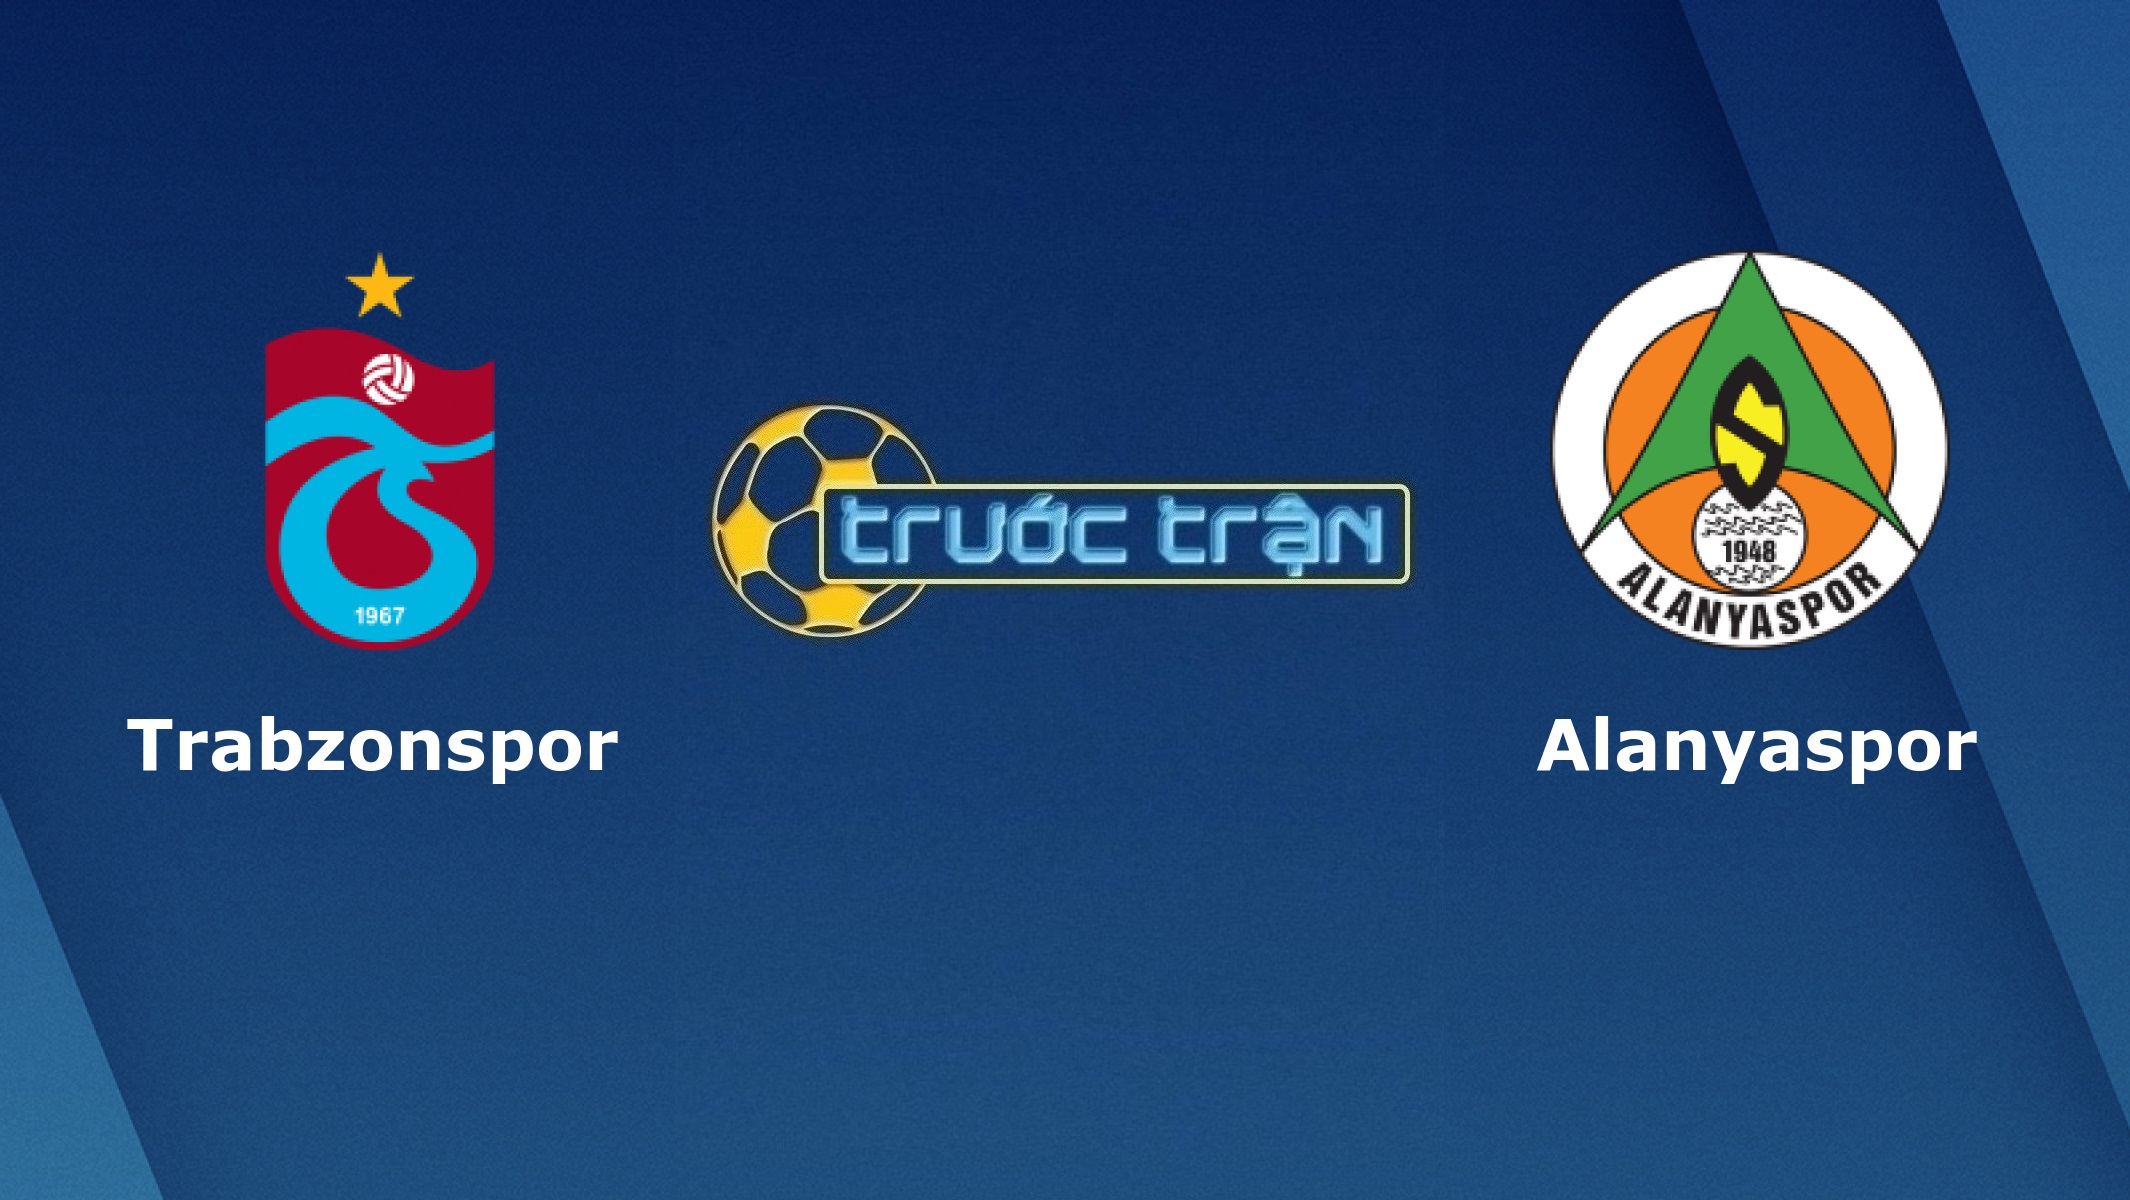 Trabzonspor vs Alanyaspor – Tip kèo bóng đá hôm nay – 30/07